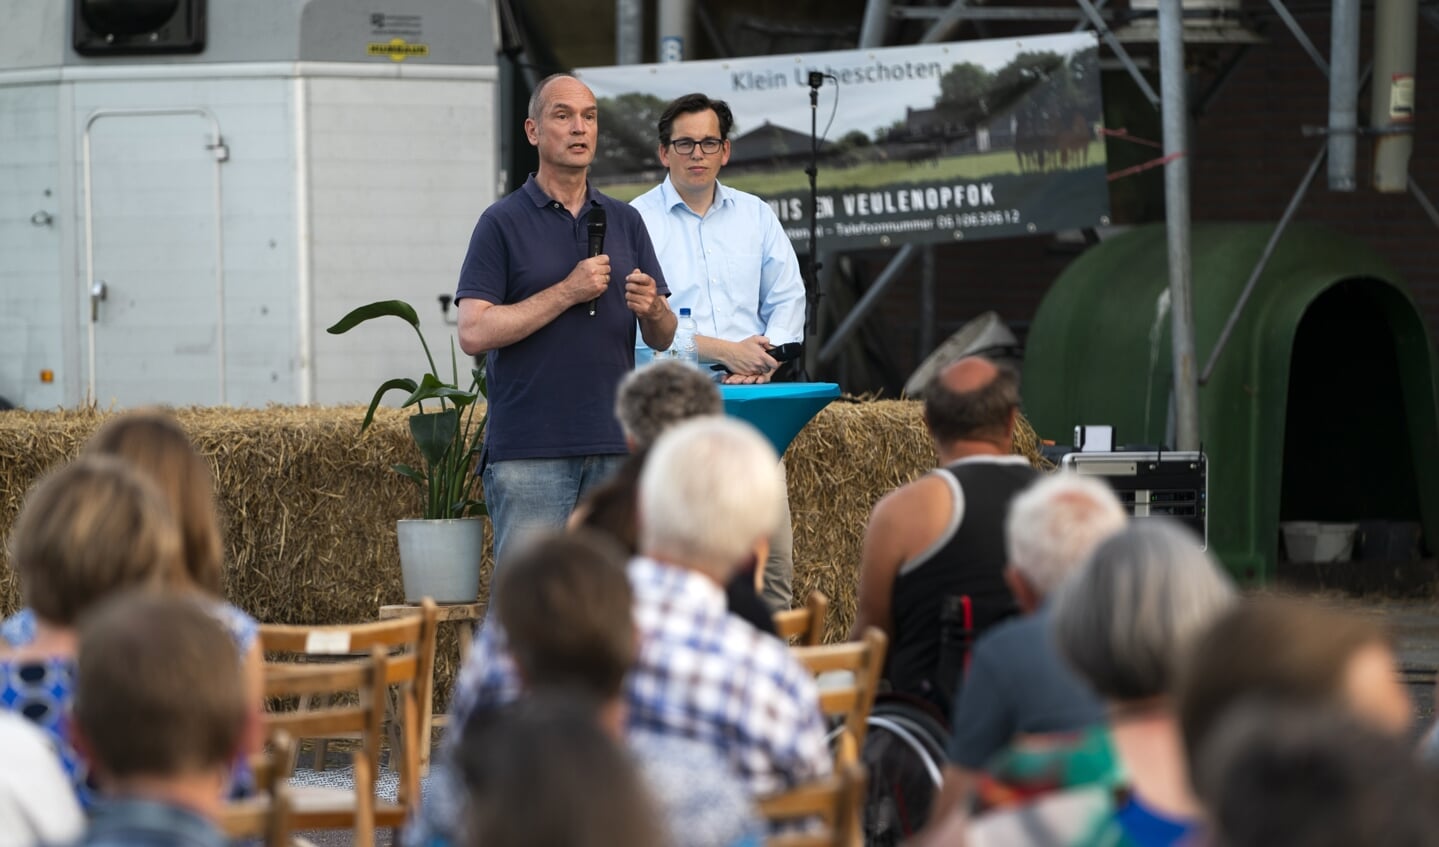 ChristenUnie-Kamerleden Pieter Grinwis en Gert-Jan Segers in gesprek met CU-leden en boze boeren, op een partijbijeenkomst in Renswoude.